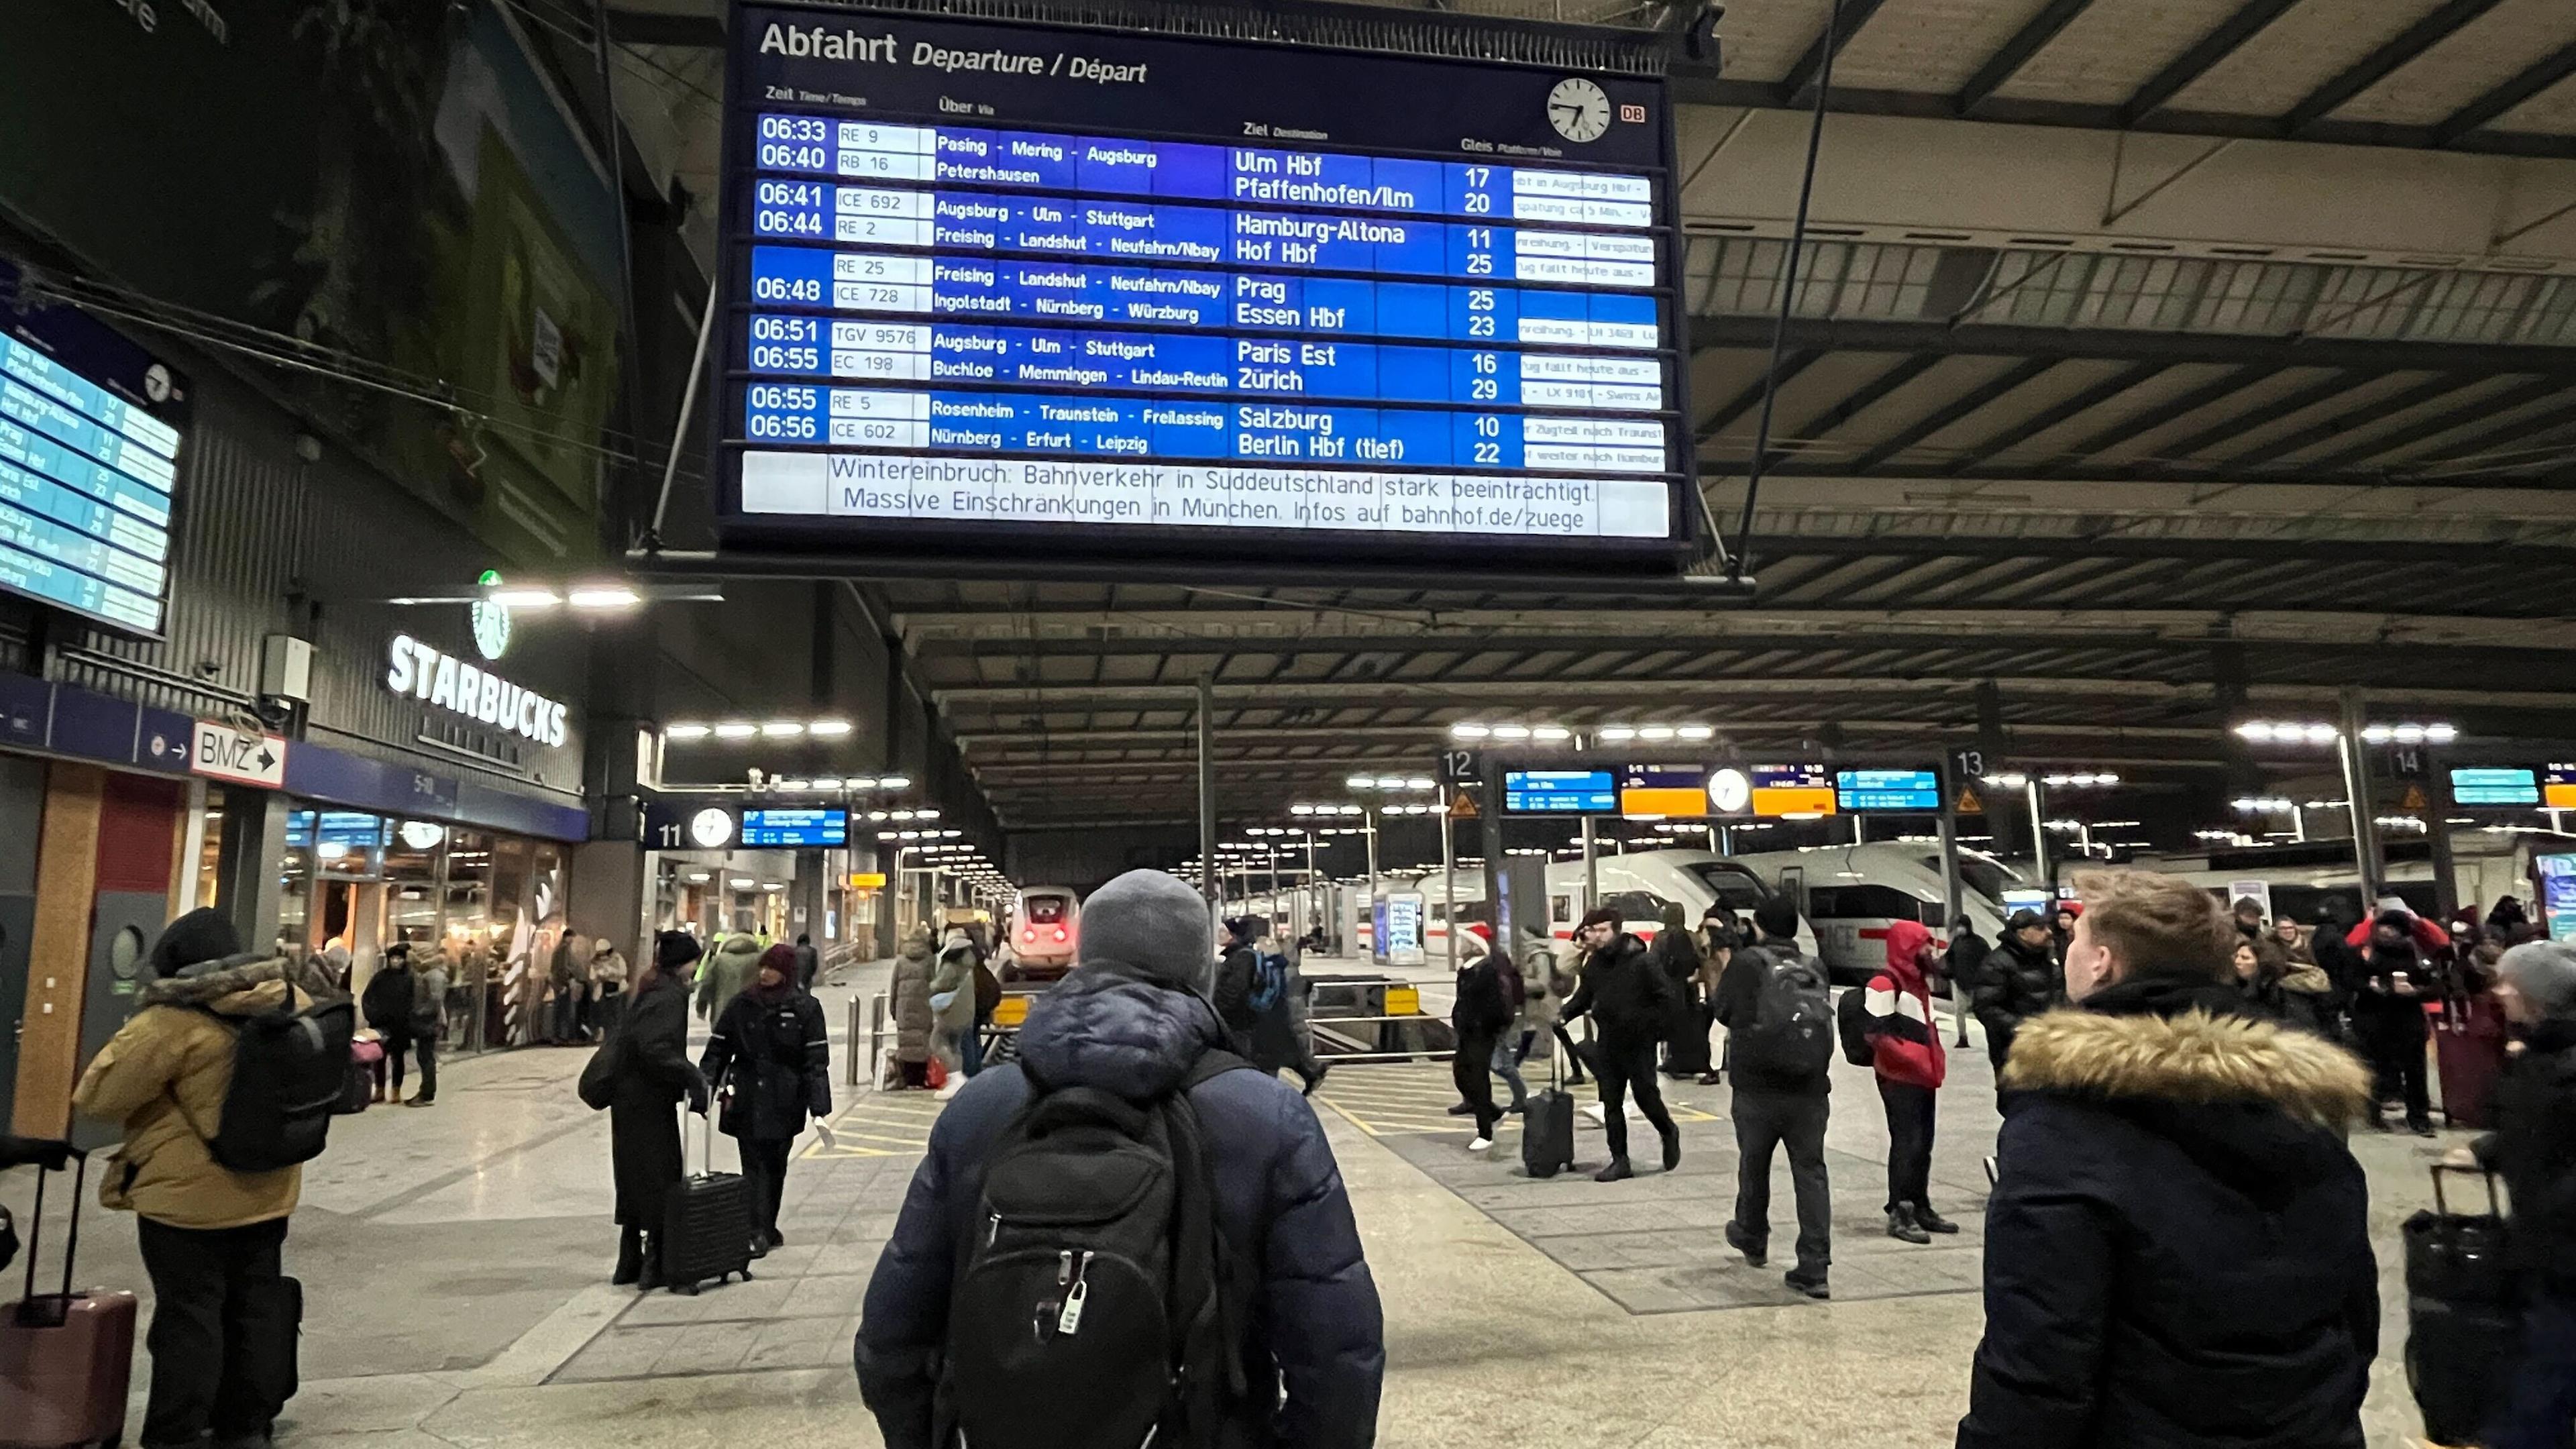 Reisende in Witnerkleidung stehen vor einer Anzeigetafel im Hauptbahnhof München